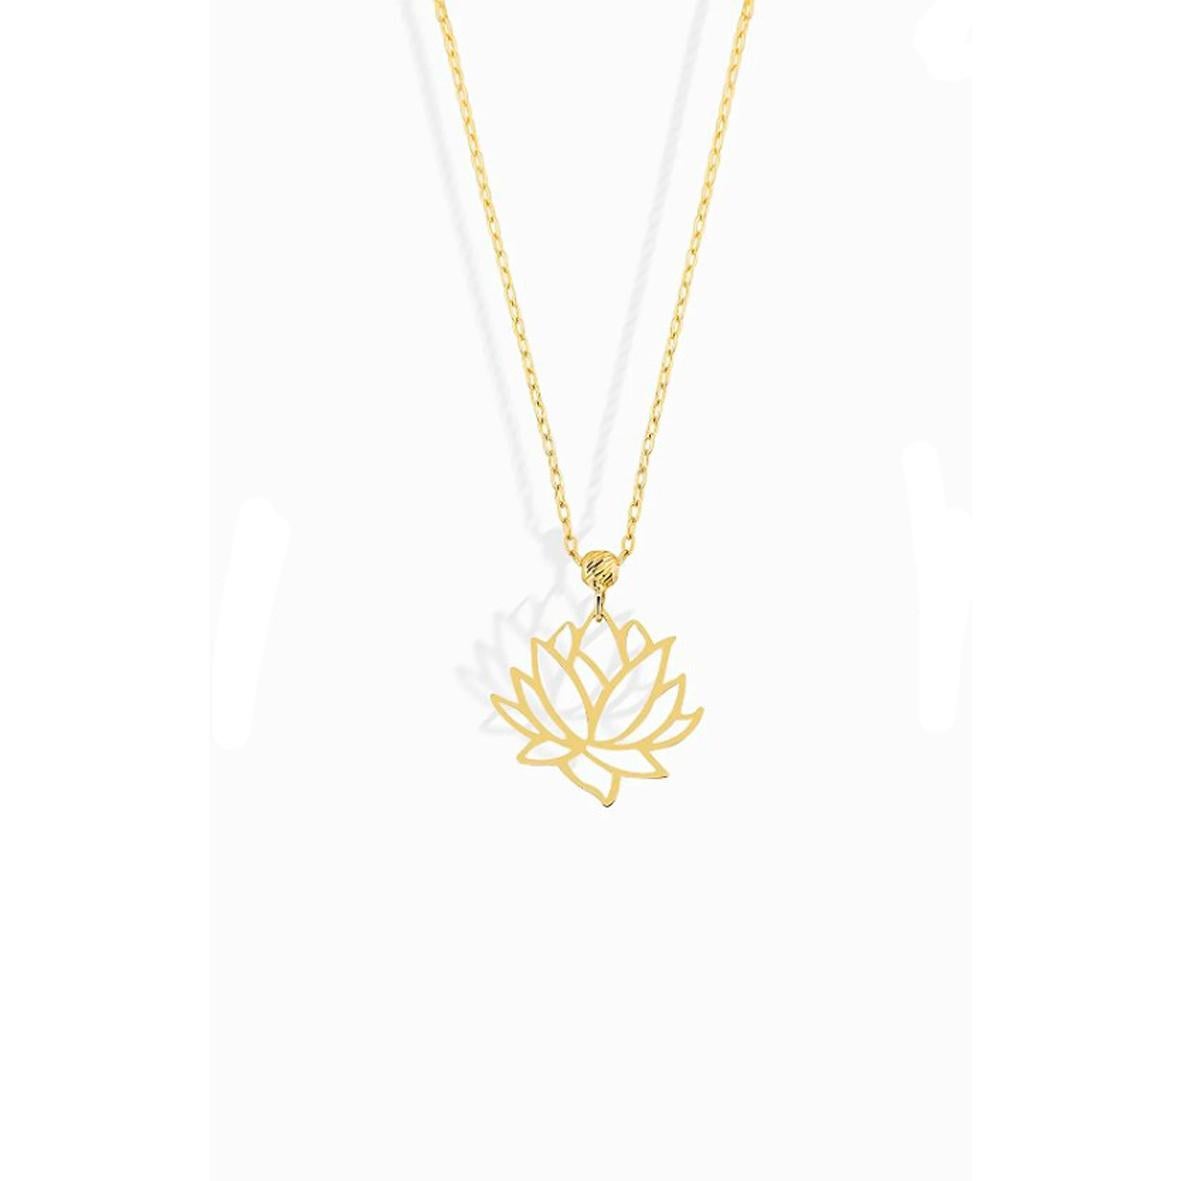 Lotus Necklace in 14 Karat Gold.  1